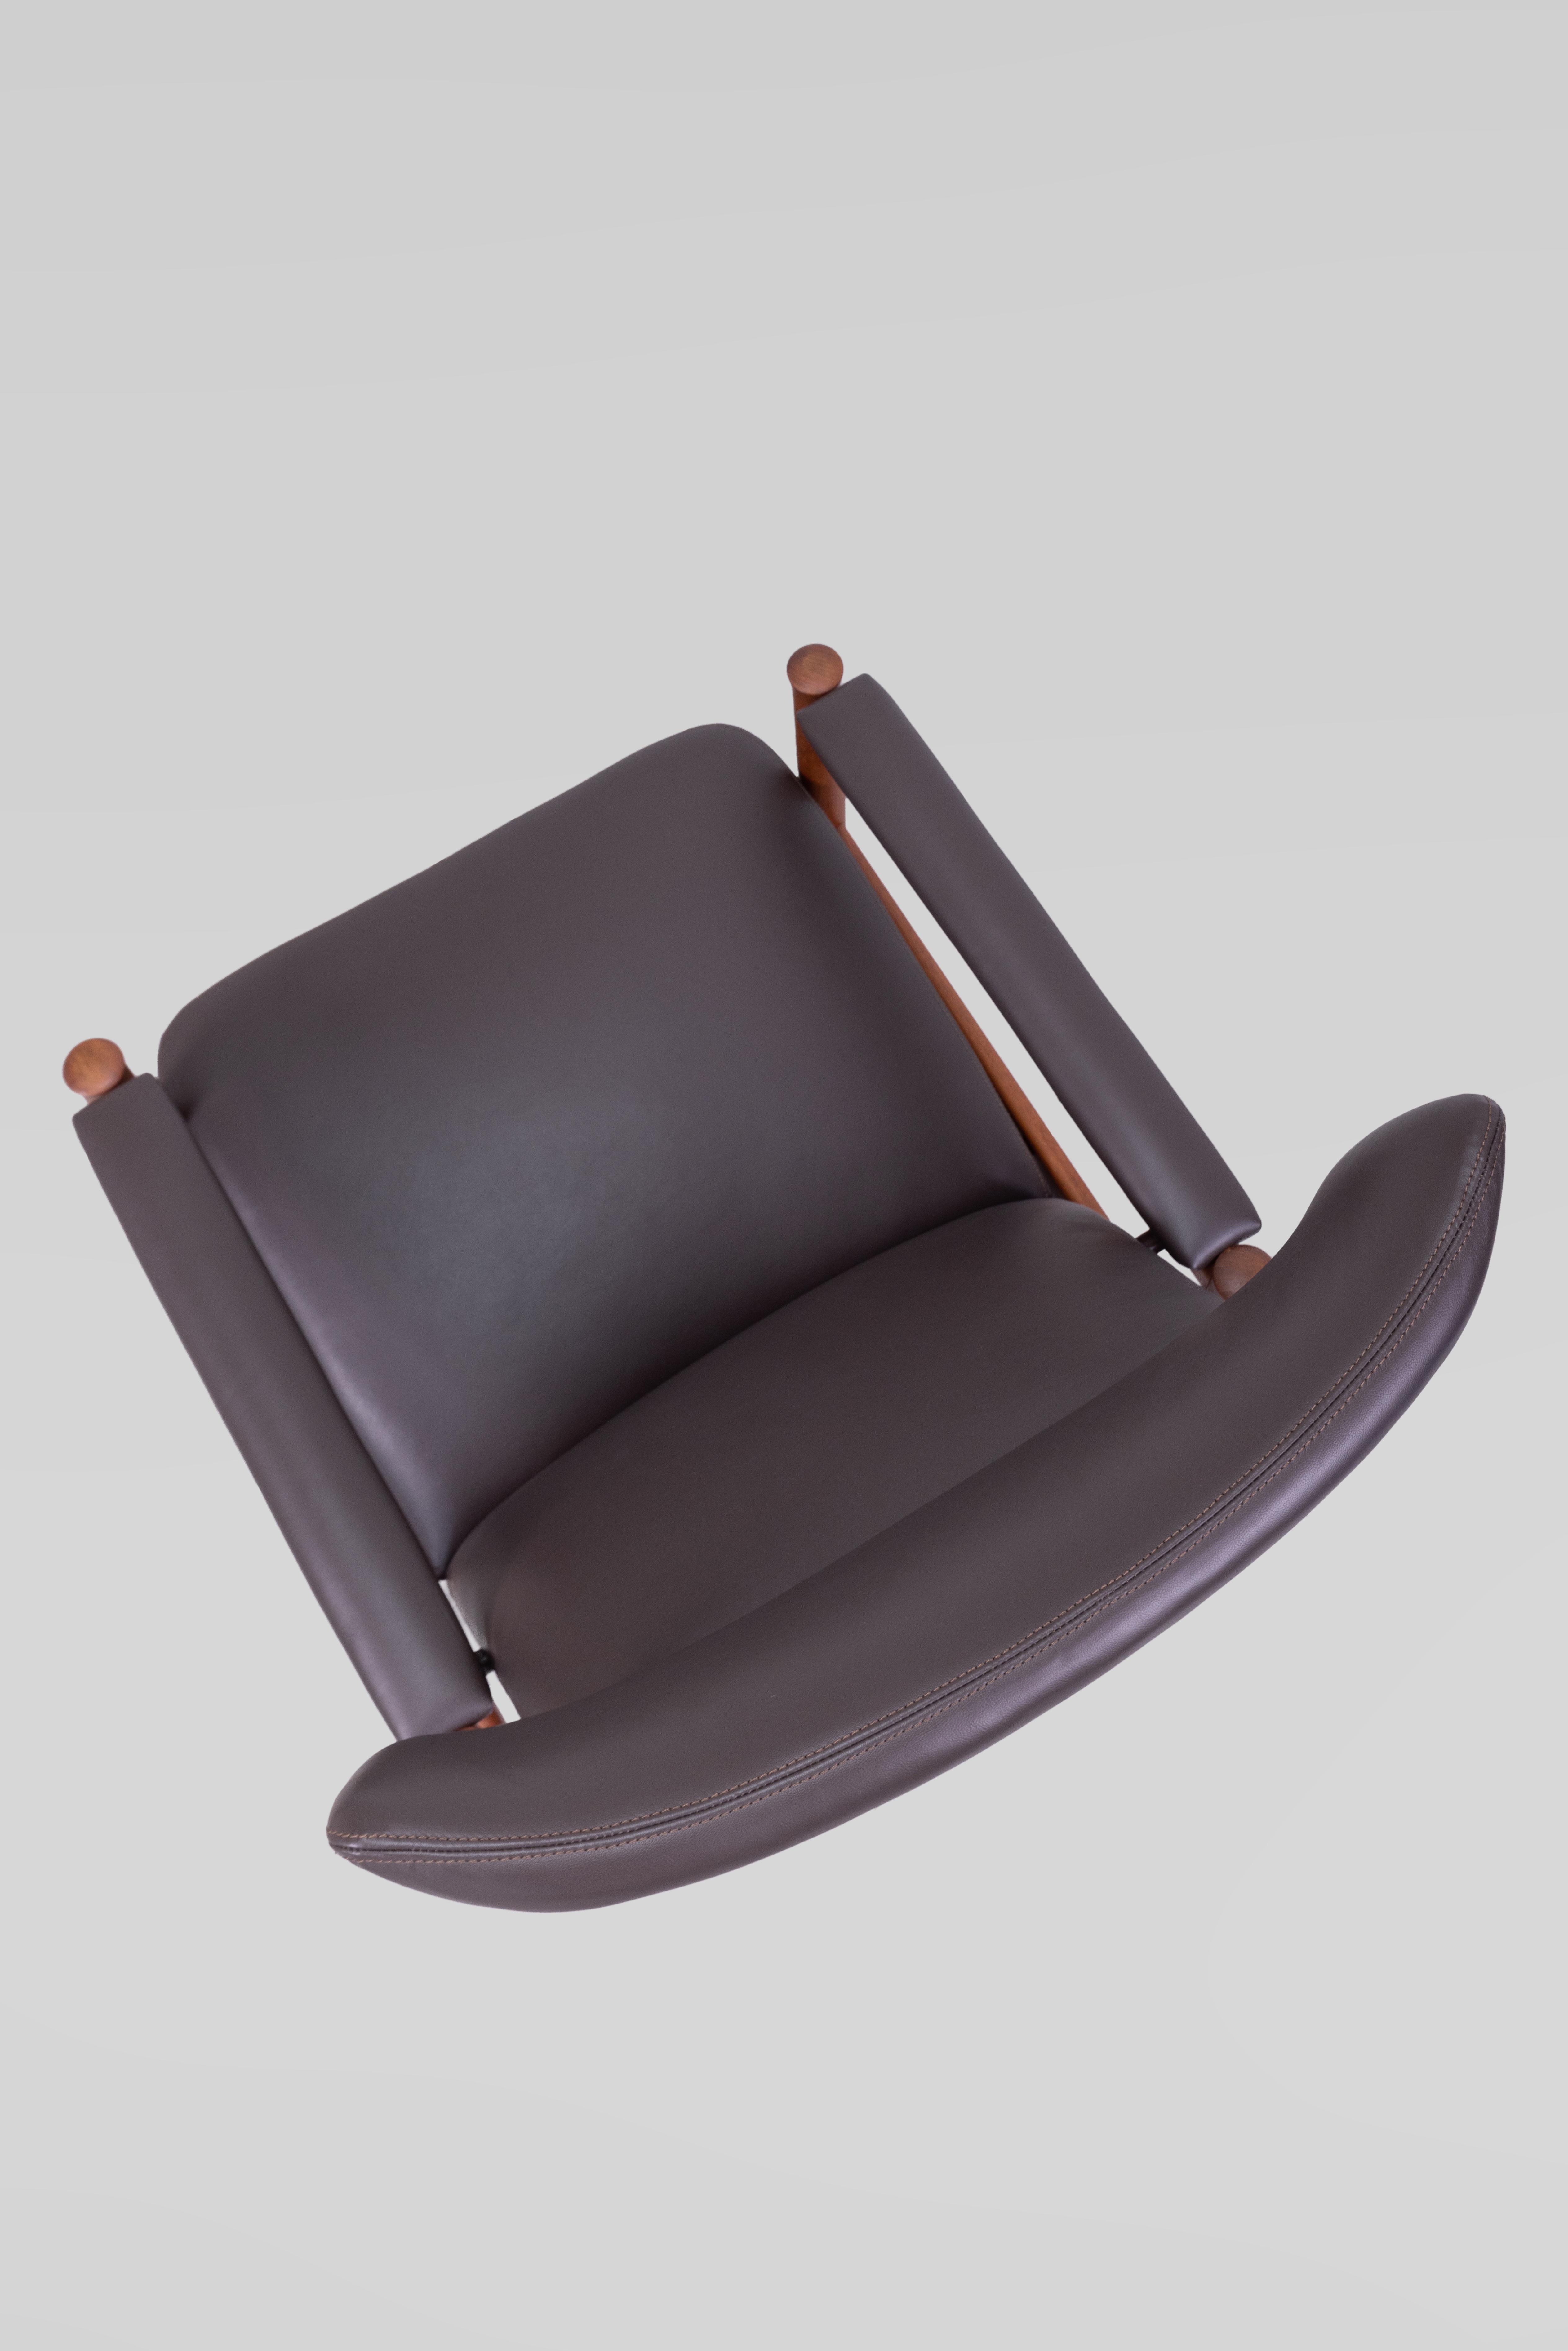 Leather Soren Hansen Wingback Chair Model 4365, Denmark 1960s For Sale